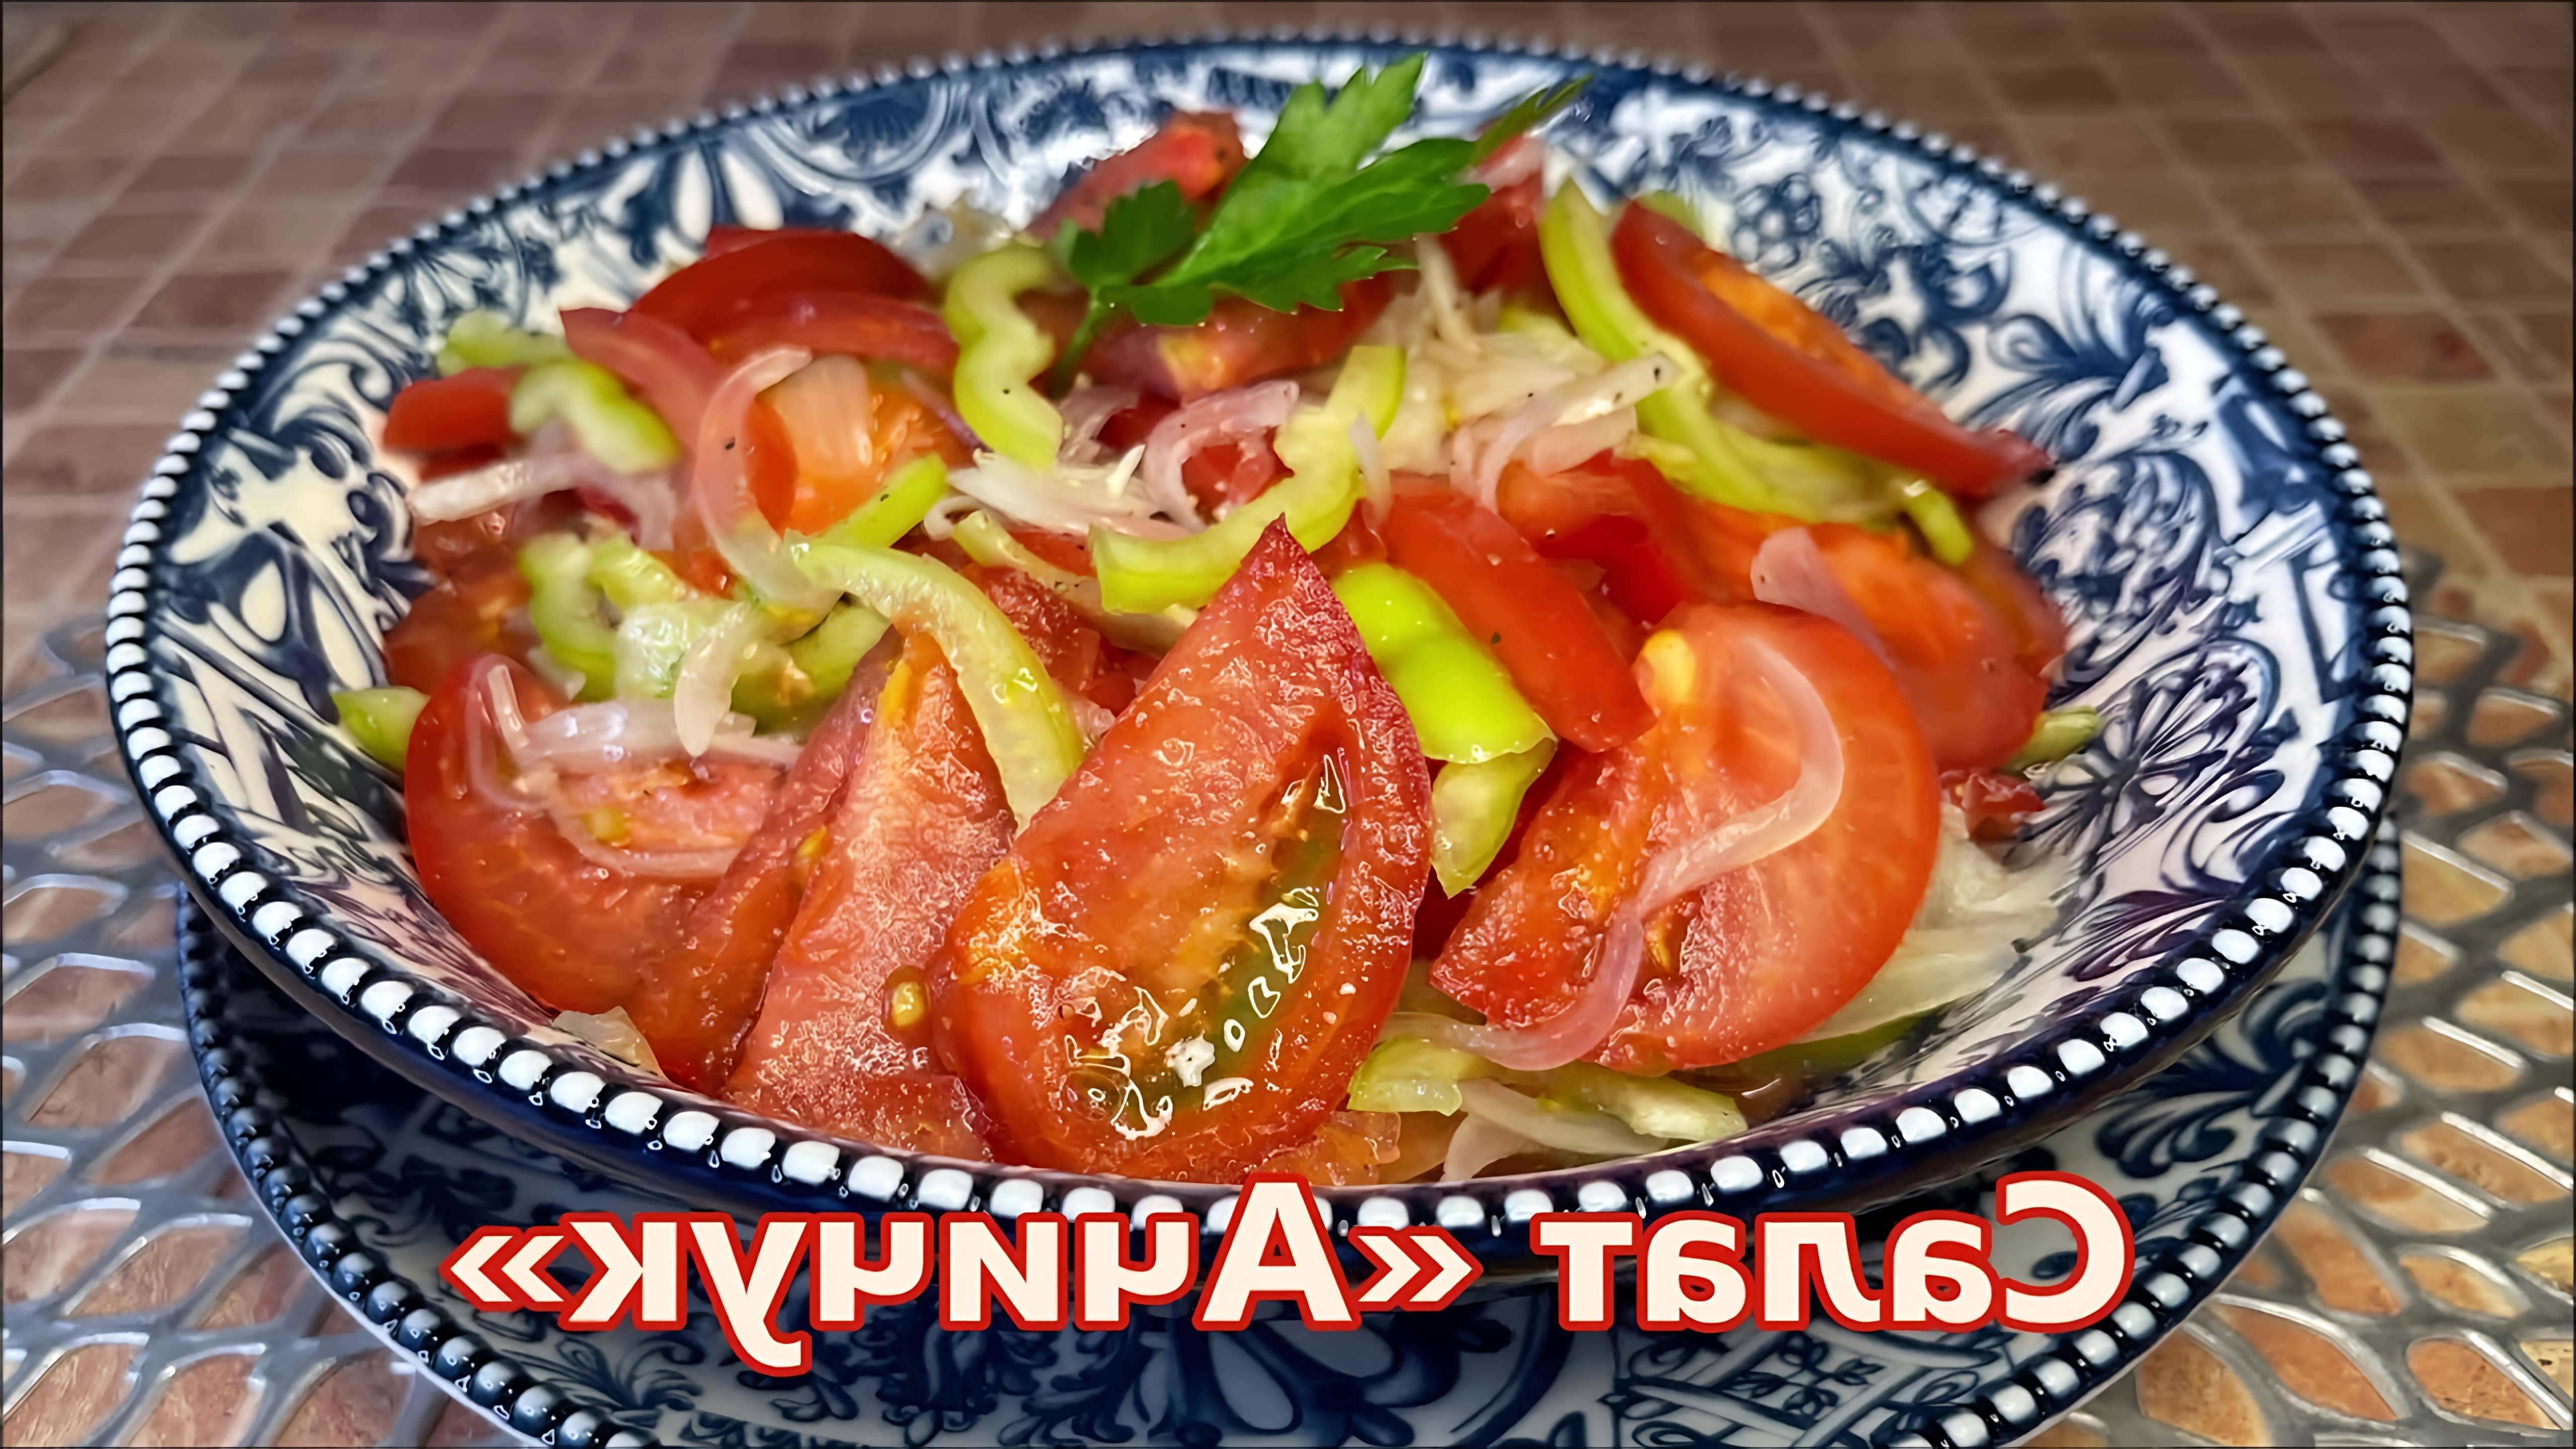 В данном видео демонстрируется процесс приготовления узбекского помидорного салата "Ачичук", который является популярным дополнением к плову и мясу